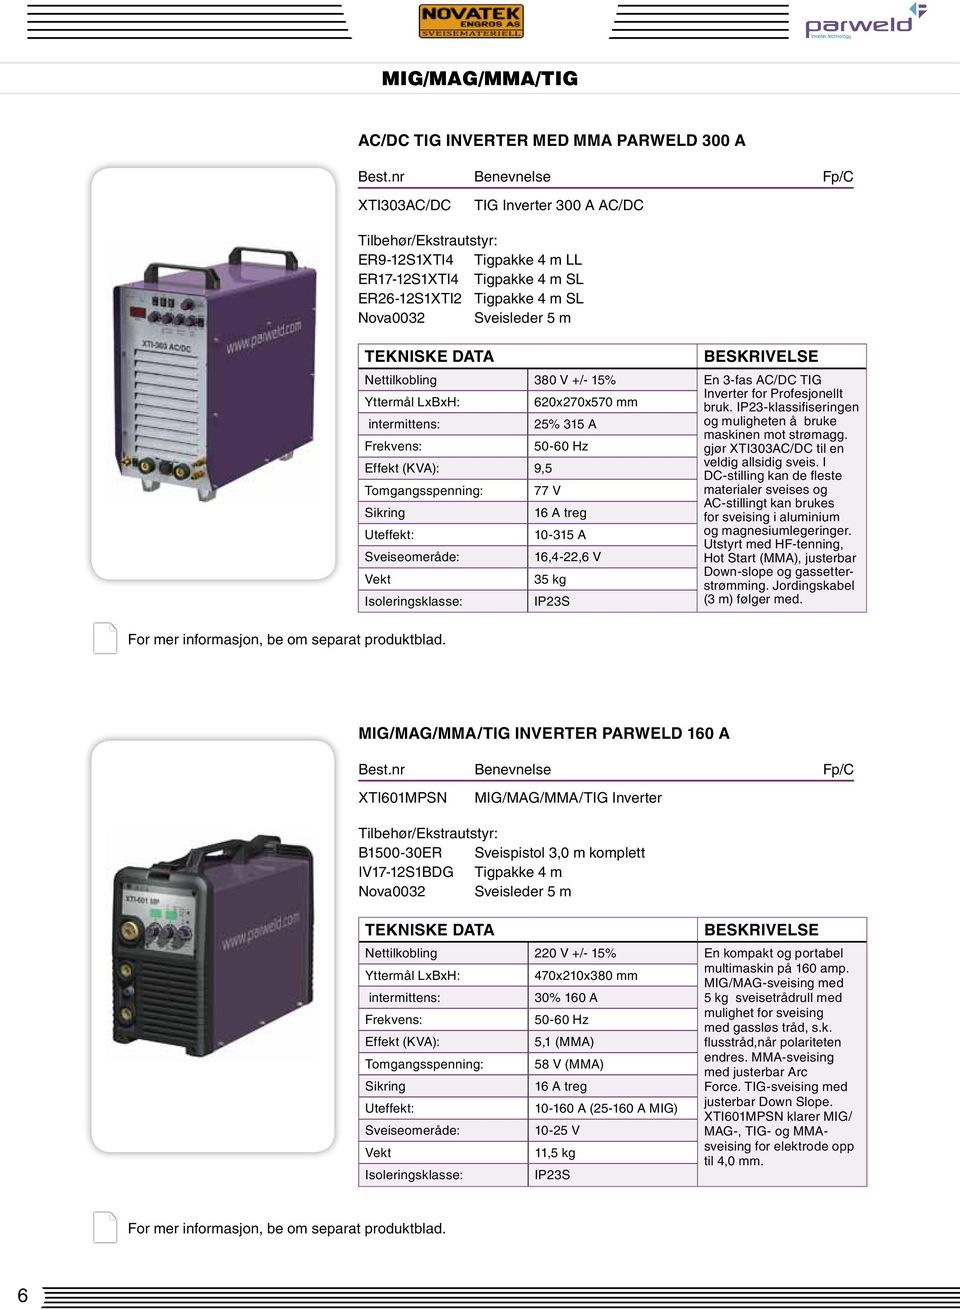 AC/DC TIG Yttermål LxBxH: 620x270x570 mm Inverter for Profesjonellt bruk. IP23-klassifiseringen intermittens: 25% 315 A og muligheten å bruke maskinen mot strømagg.